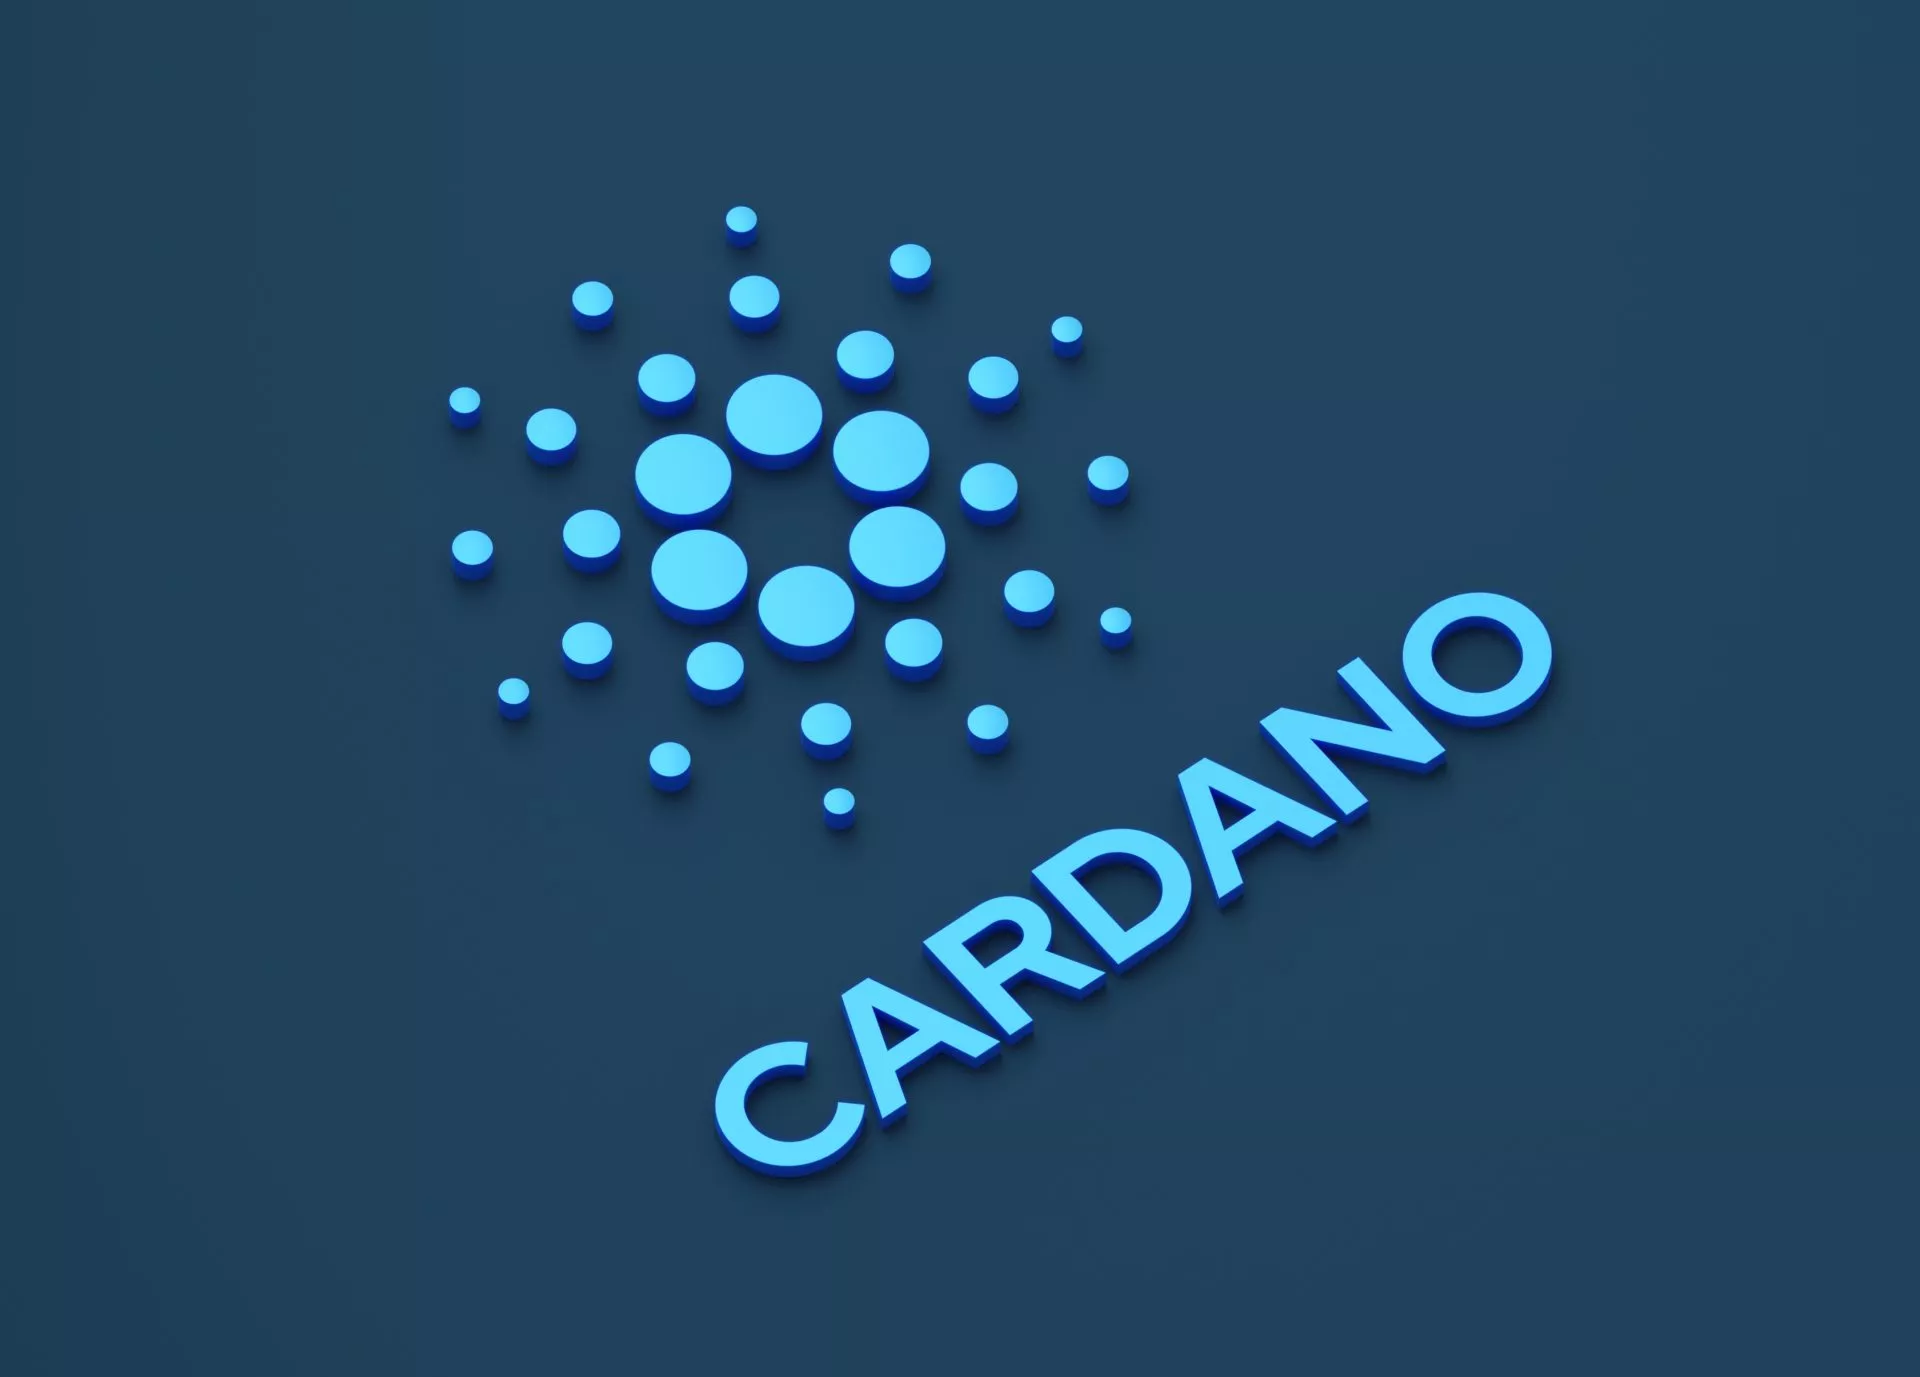 Totale waarde vergrendeld in Cardano (ADA) bereikt nieuwe recordhoogte